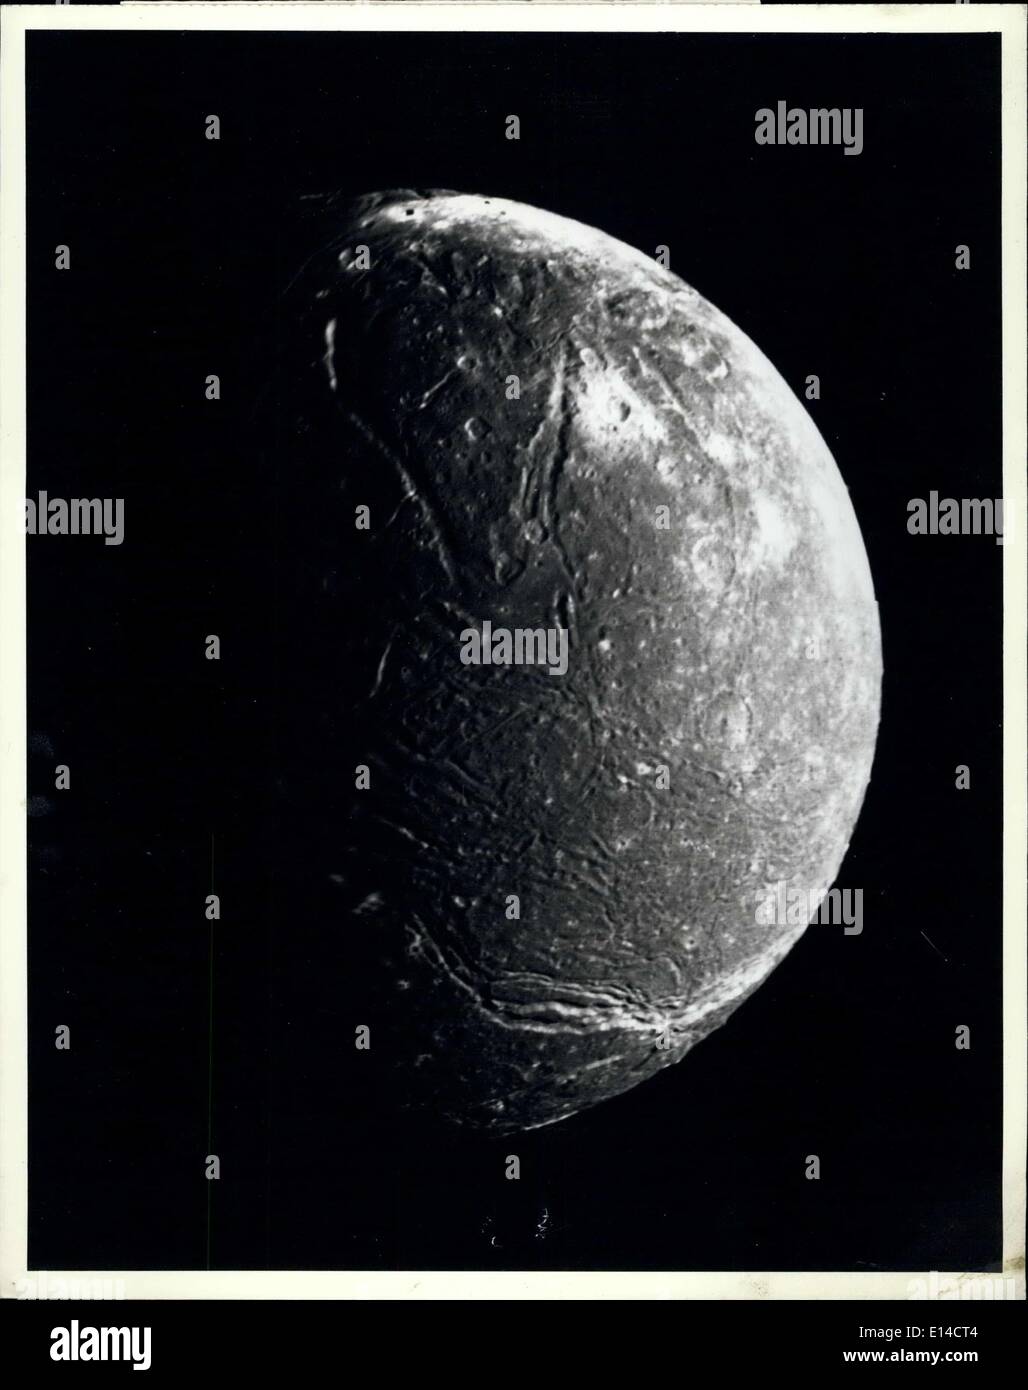 Abril 17, 2012 - Este mosaico de cuatro imágenes de mayor resolución de Ariel representa el más detallado el Voyager 2 imagen de este satélite de Urano. Las imágenes fueron tomadas a través del filtro transparente de Voyager cámara de ángulo estrecho -en enero de 1986, a una distancia de unos 130.000 kilómetros (80.000 millas). Ariel unos 1.200 kilómetros (750 millas) de diámetro, la resolución es de 2,4 km (1,5 millas). Mucho de Ariel;'s superficie está densamente cubiertas de cráteres de 5 a 10 km (3 a 6 millas) de diámetro. Estos cráteres están cerca del umbral de detección en esta imagen Foto de stock